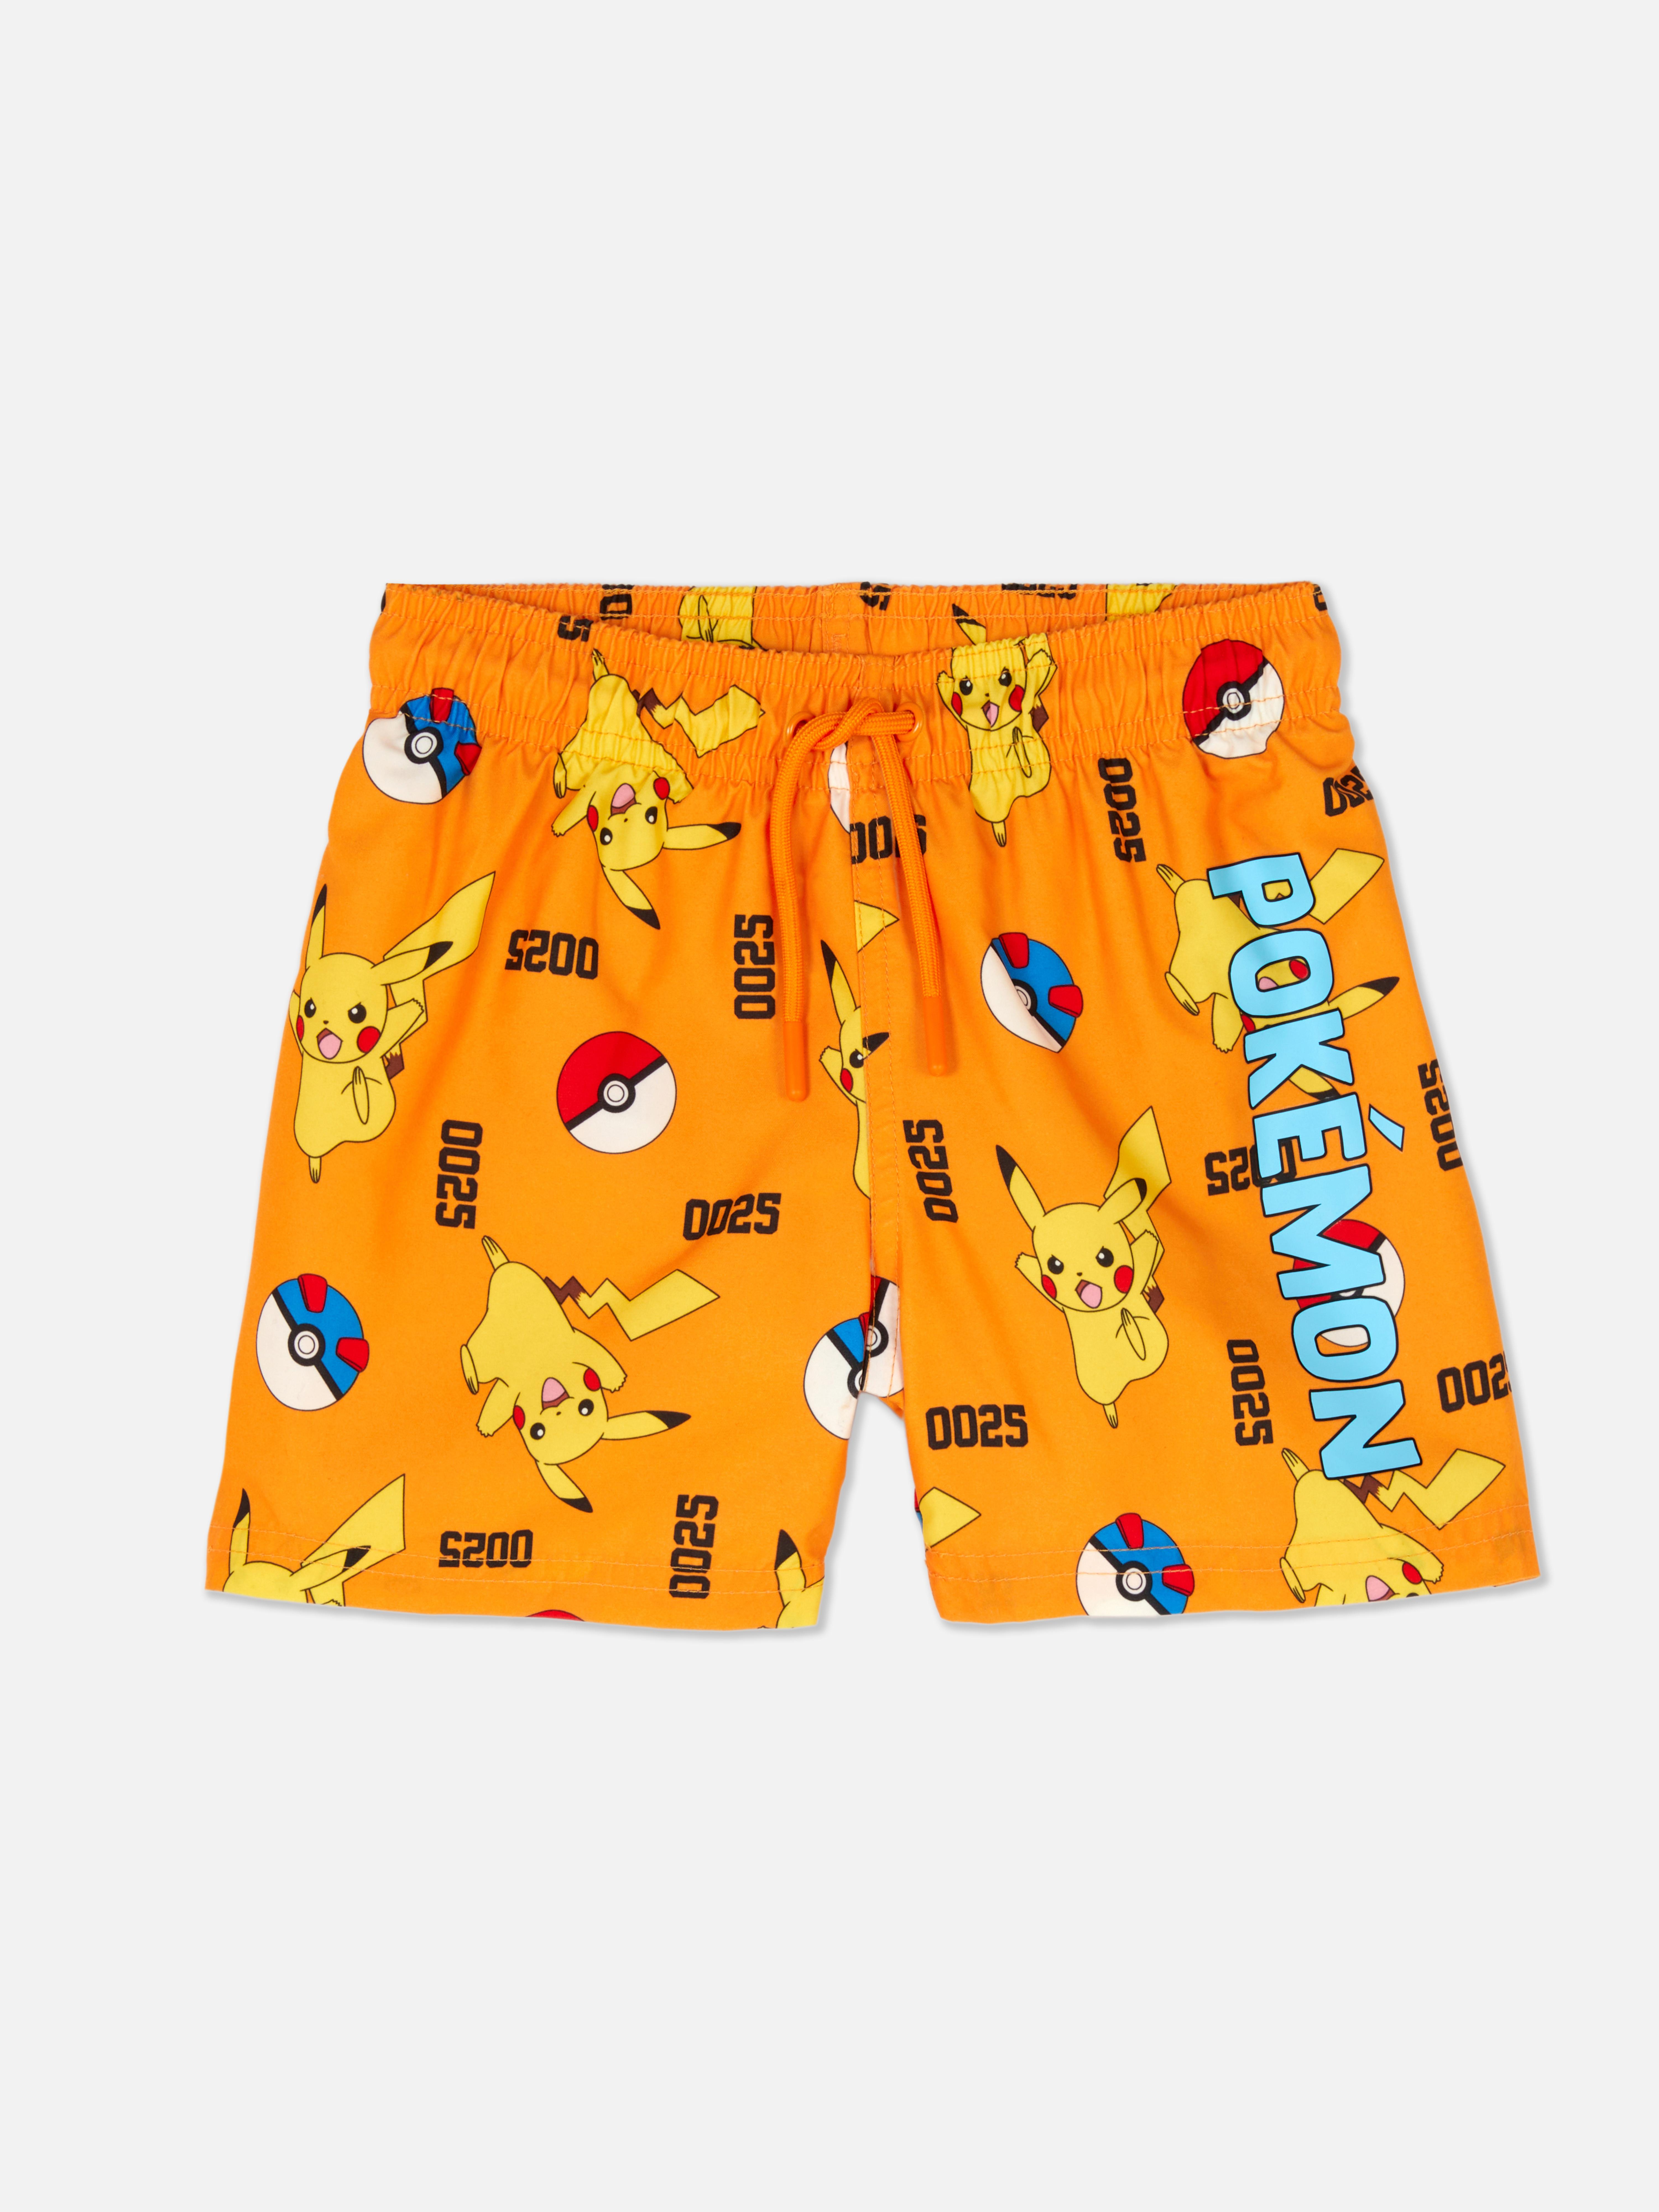 „Pokémon Pikachu“ Boardshorts